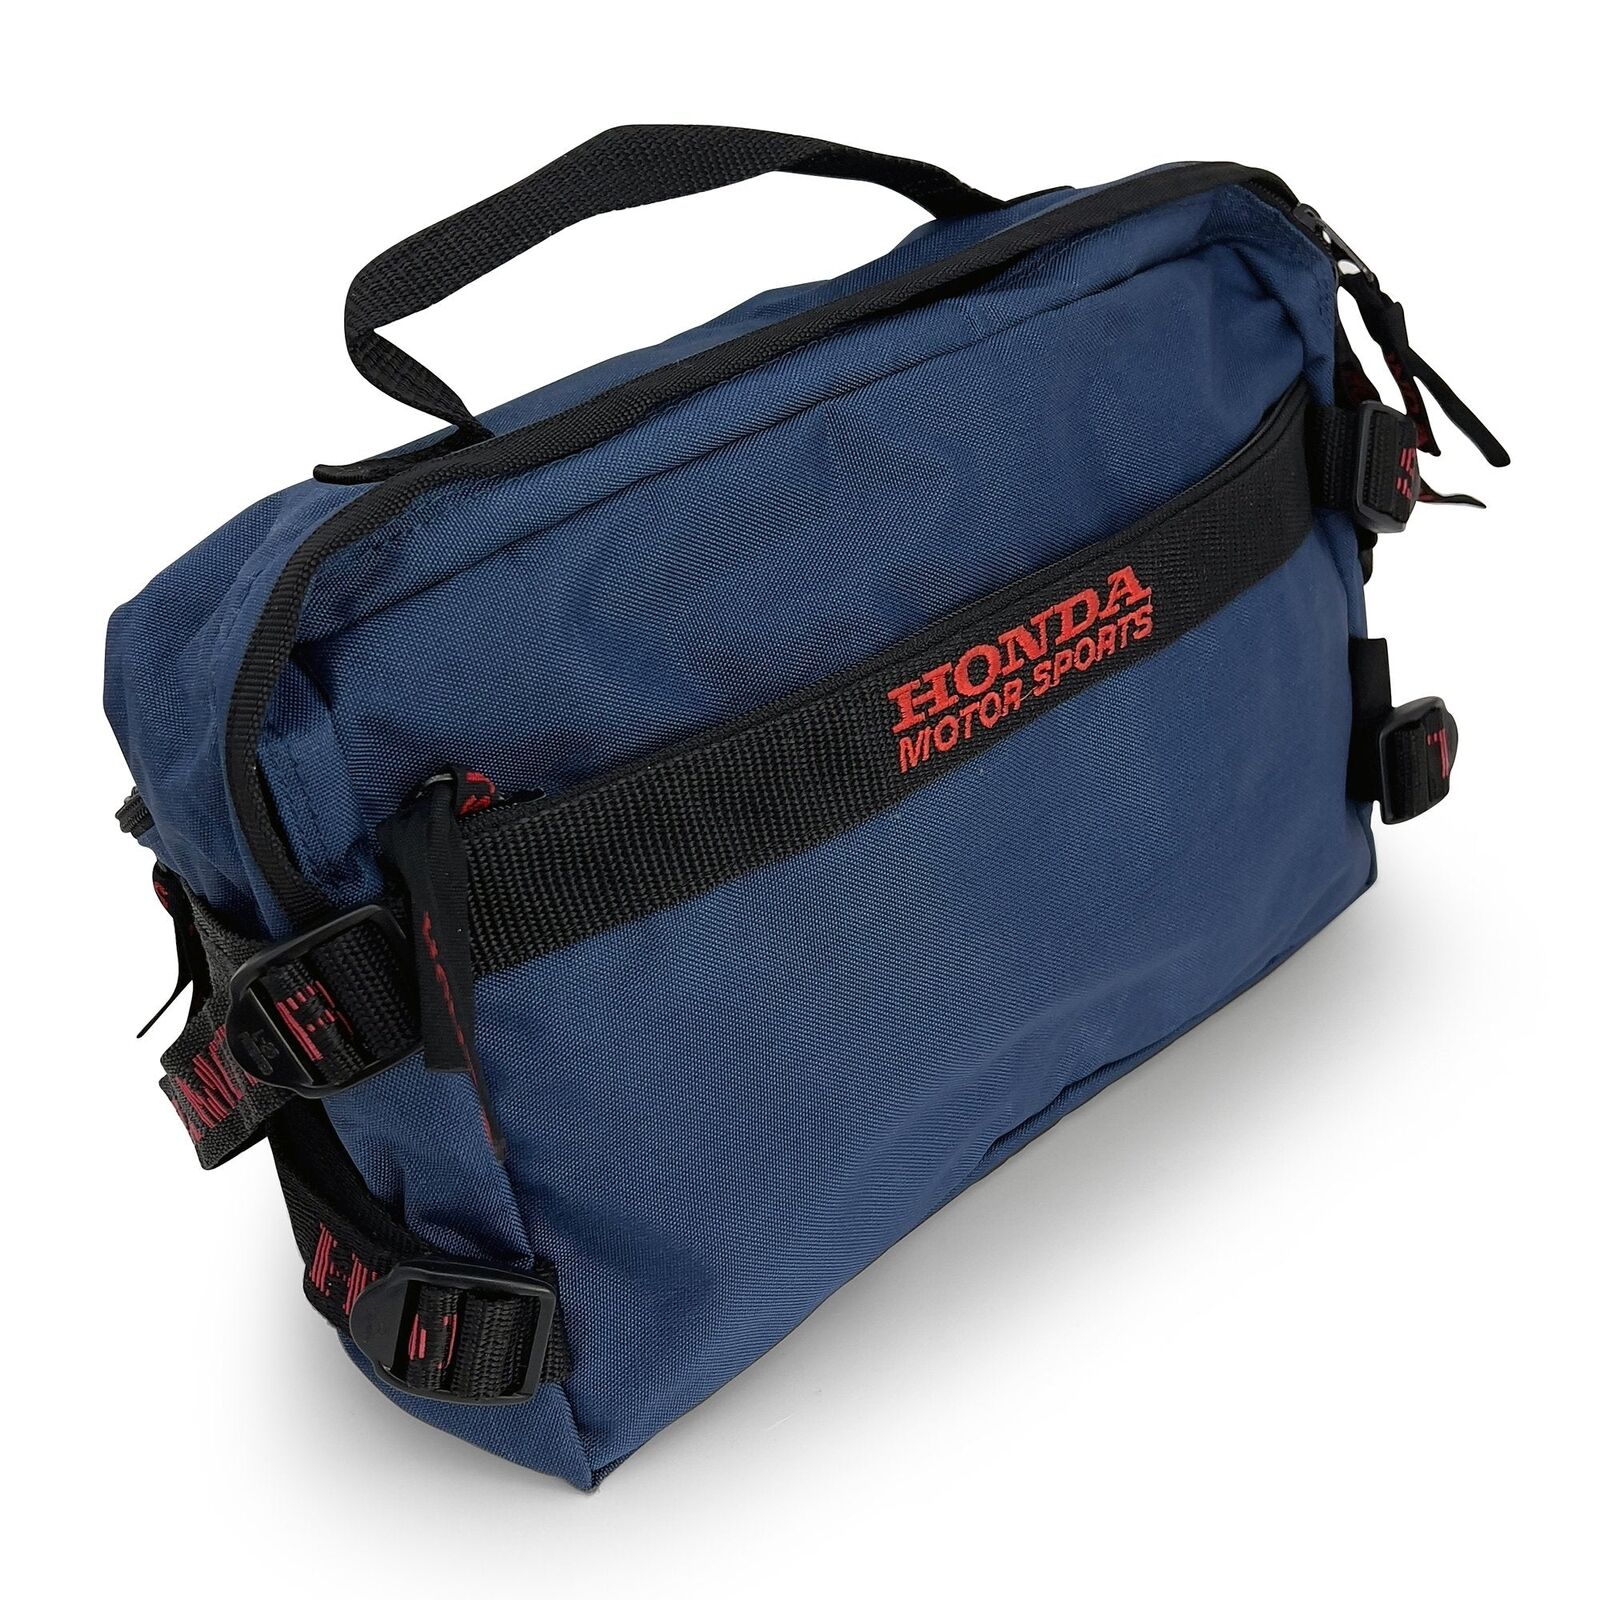 Retro JDM Japan Honda Motorsports Racing Hip Pack Shoulder Bag Blue